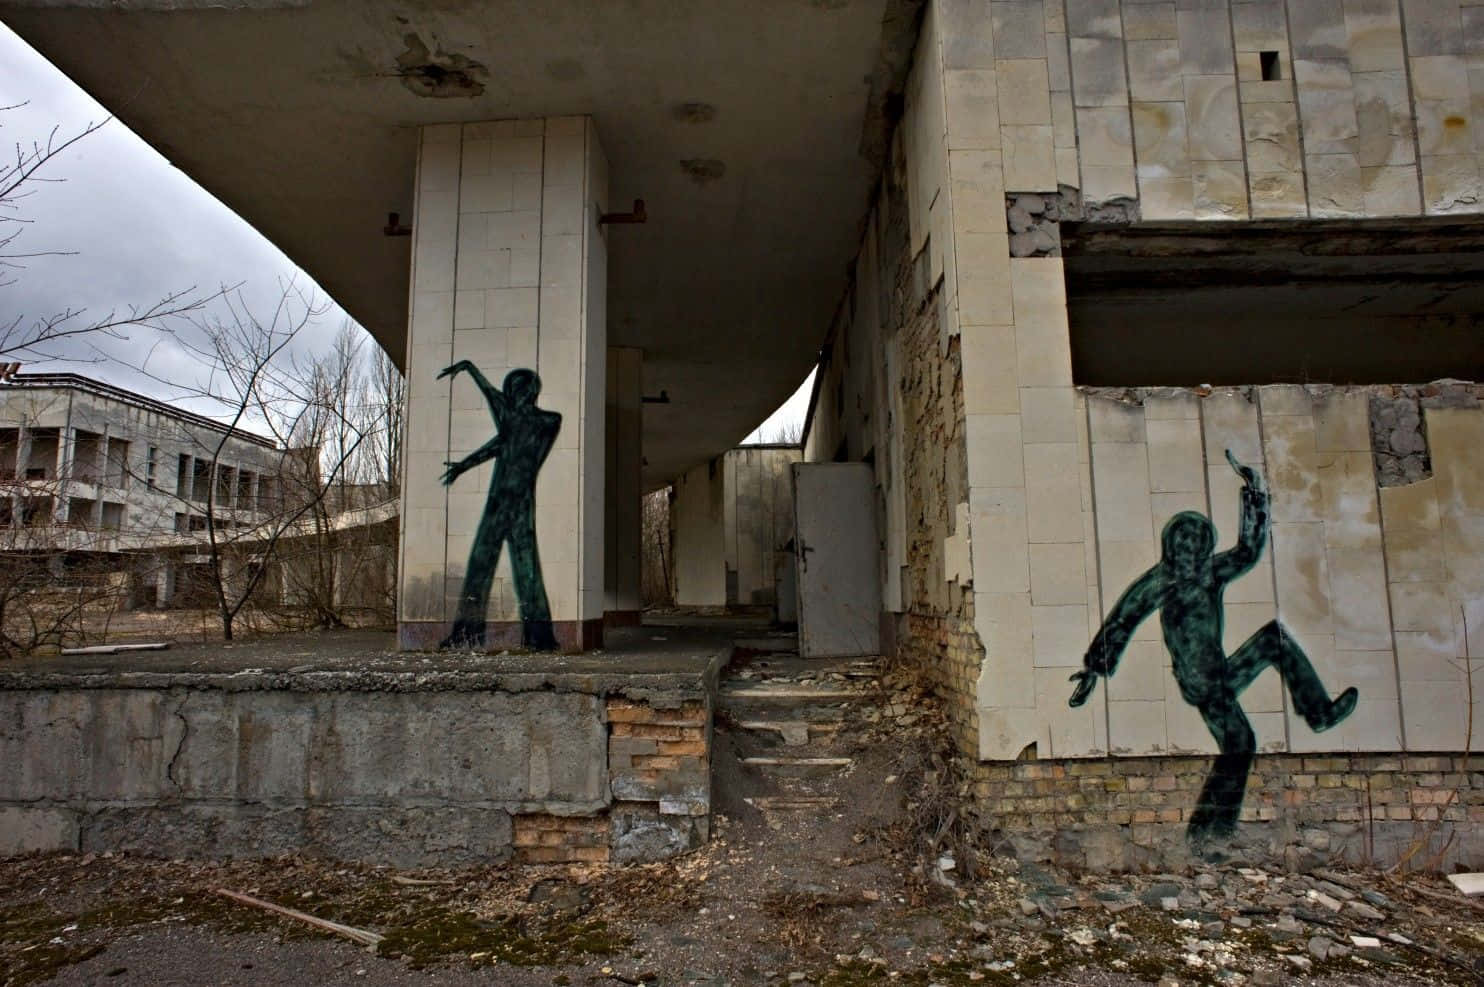 Eingebäude Mit Graffiti Darauf Und Ein Mann Auf Einer Leiter